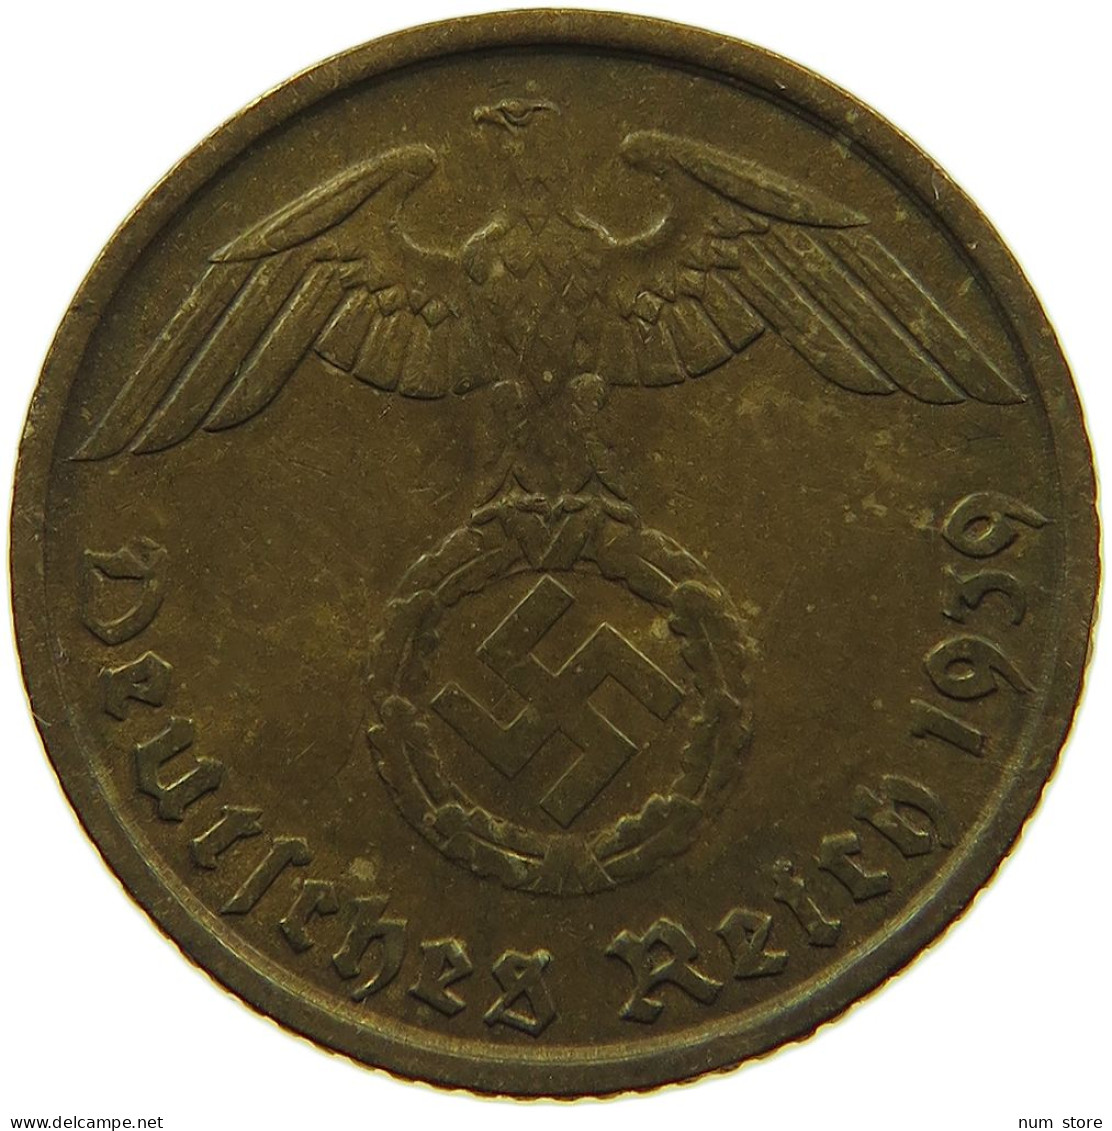 GERMANY 5 REICHSPFENNIG 1939 F #s091 0807 - 5 Reichspfennig